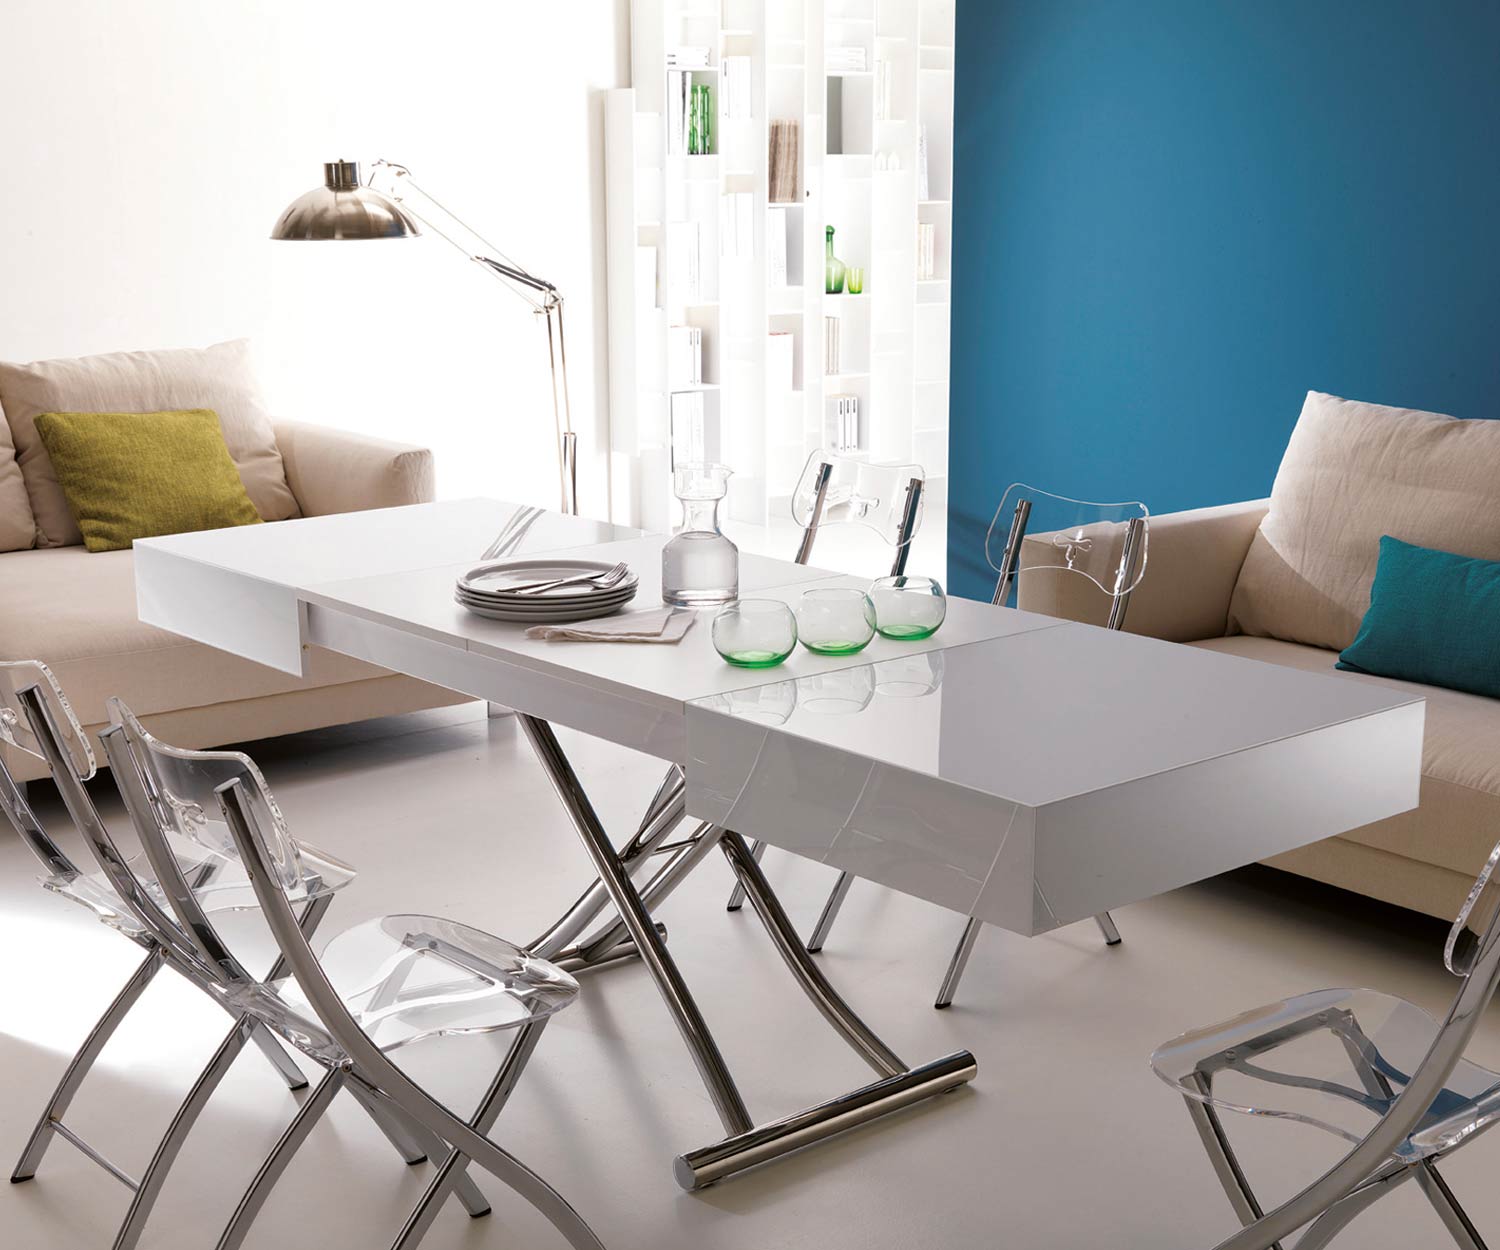 Weißer Glas Designer Couchtisch von Ozzio mit Sofa und Sessel in Wohnzimmer